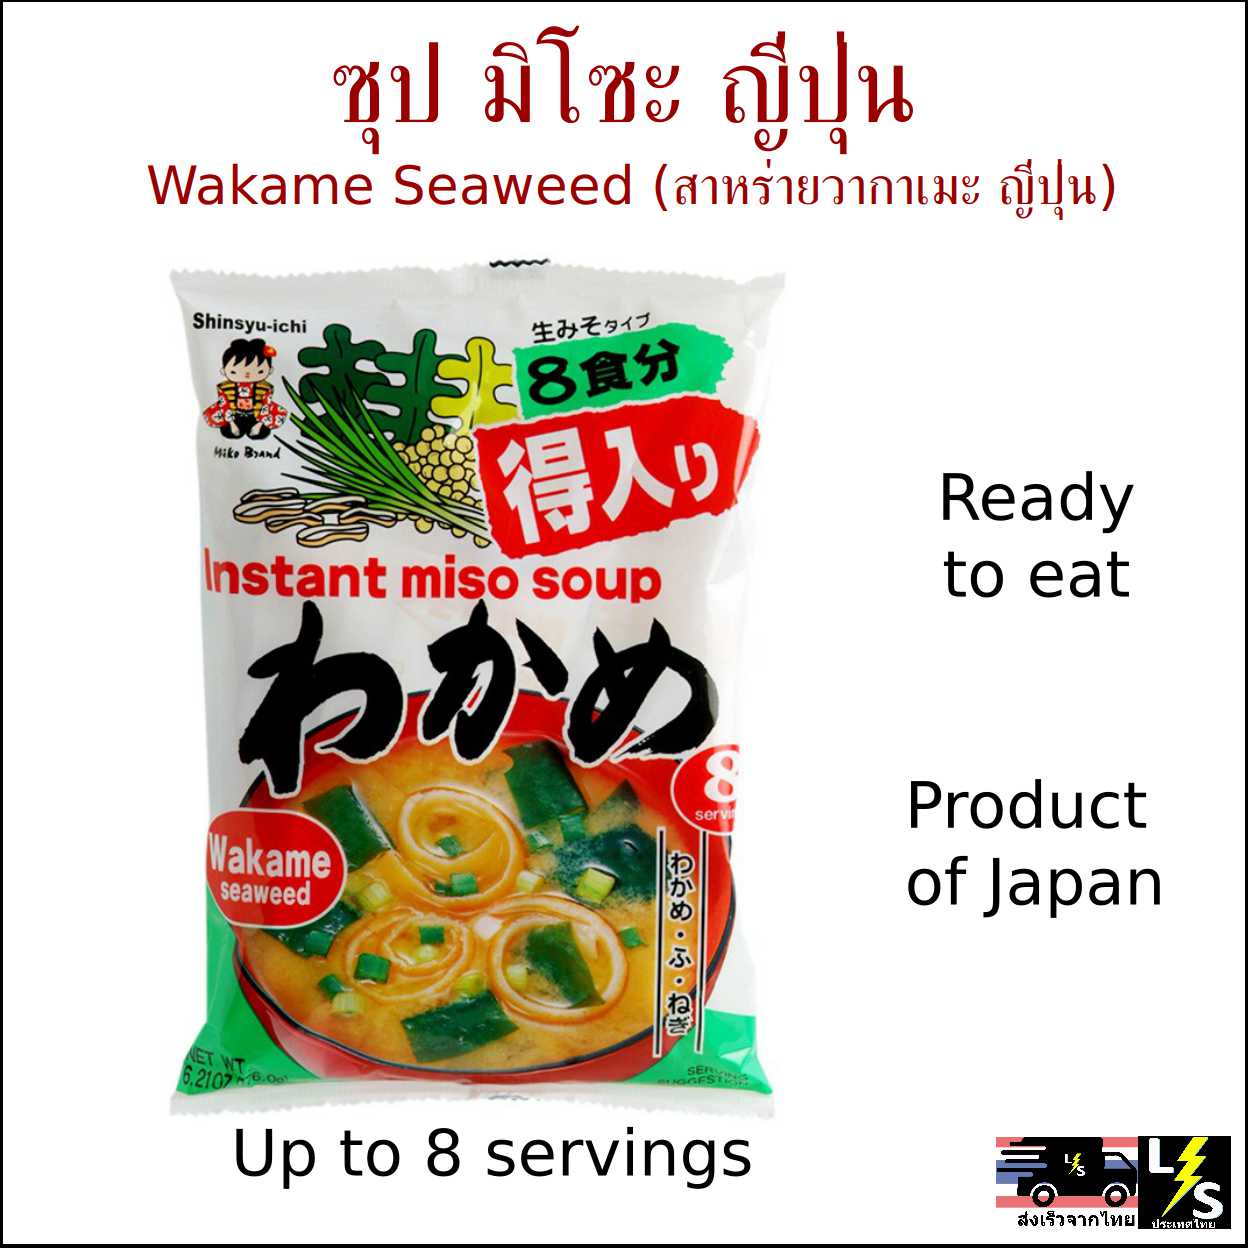 ซุป มิโซะ สาหร่ายวากาเมะ ญี่ปุ่น พร้อมรับประทาน [ส่งจากไทย] -- อาหารสำเร็จรูป ซุปมิโซะพร้อมรับประทาน สาหร่าย วากาเมะ Japanese Instant Ready to Eat Cook Miso Soup with Wakame Seaweed